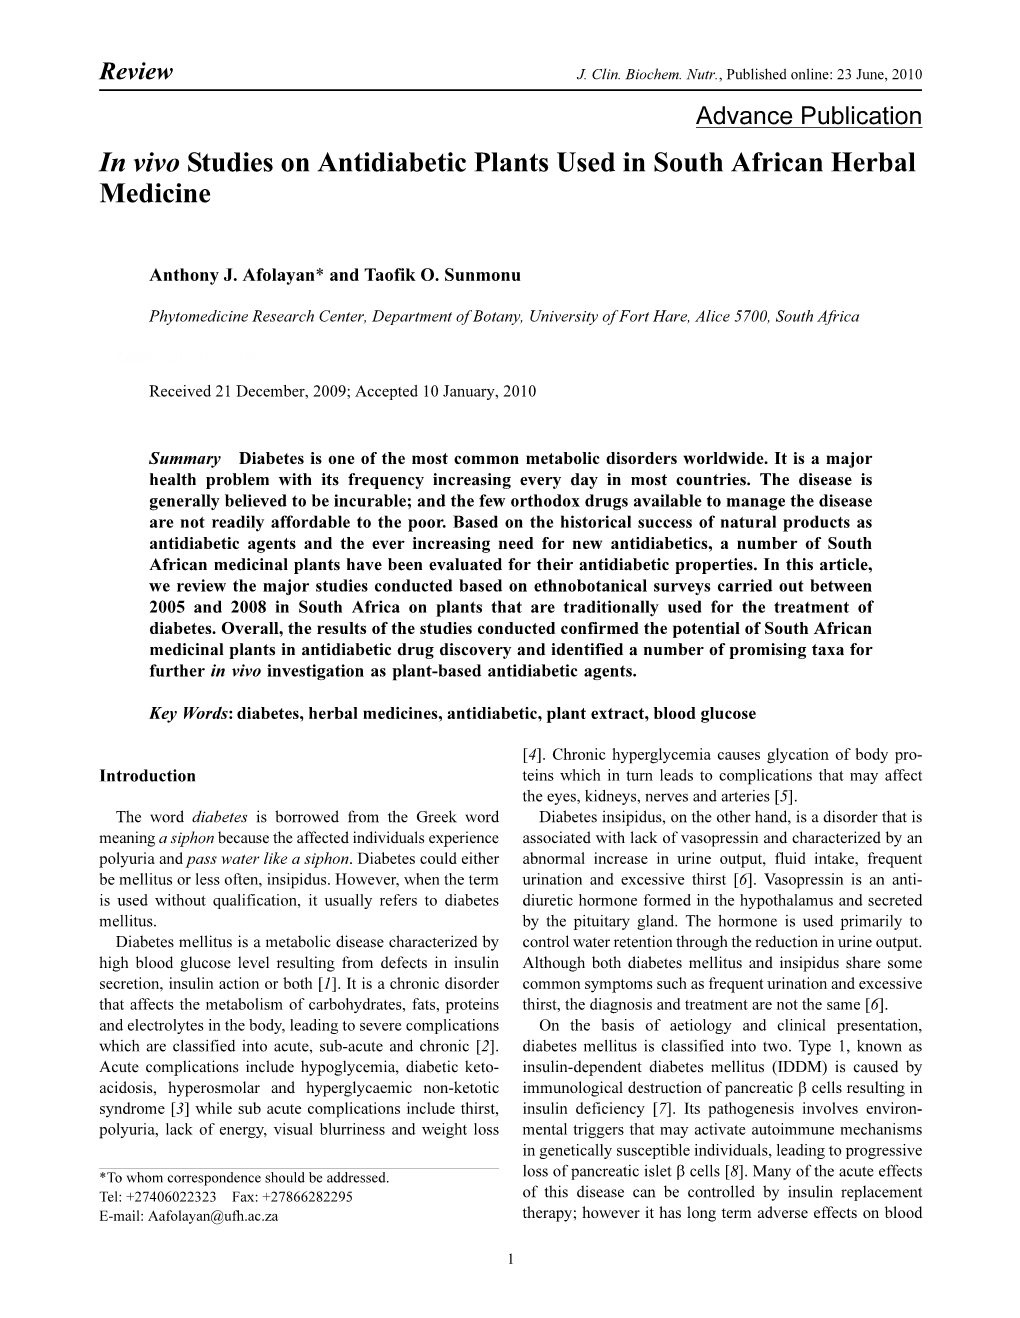 In Vivo Studies on Antidiabetic Plants Used in South African Herbal Medicine